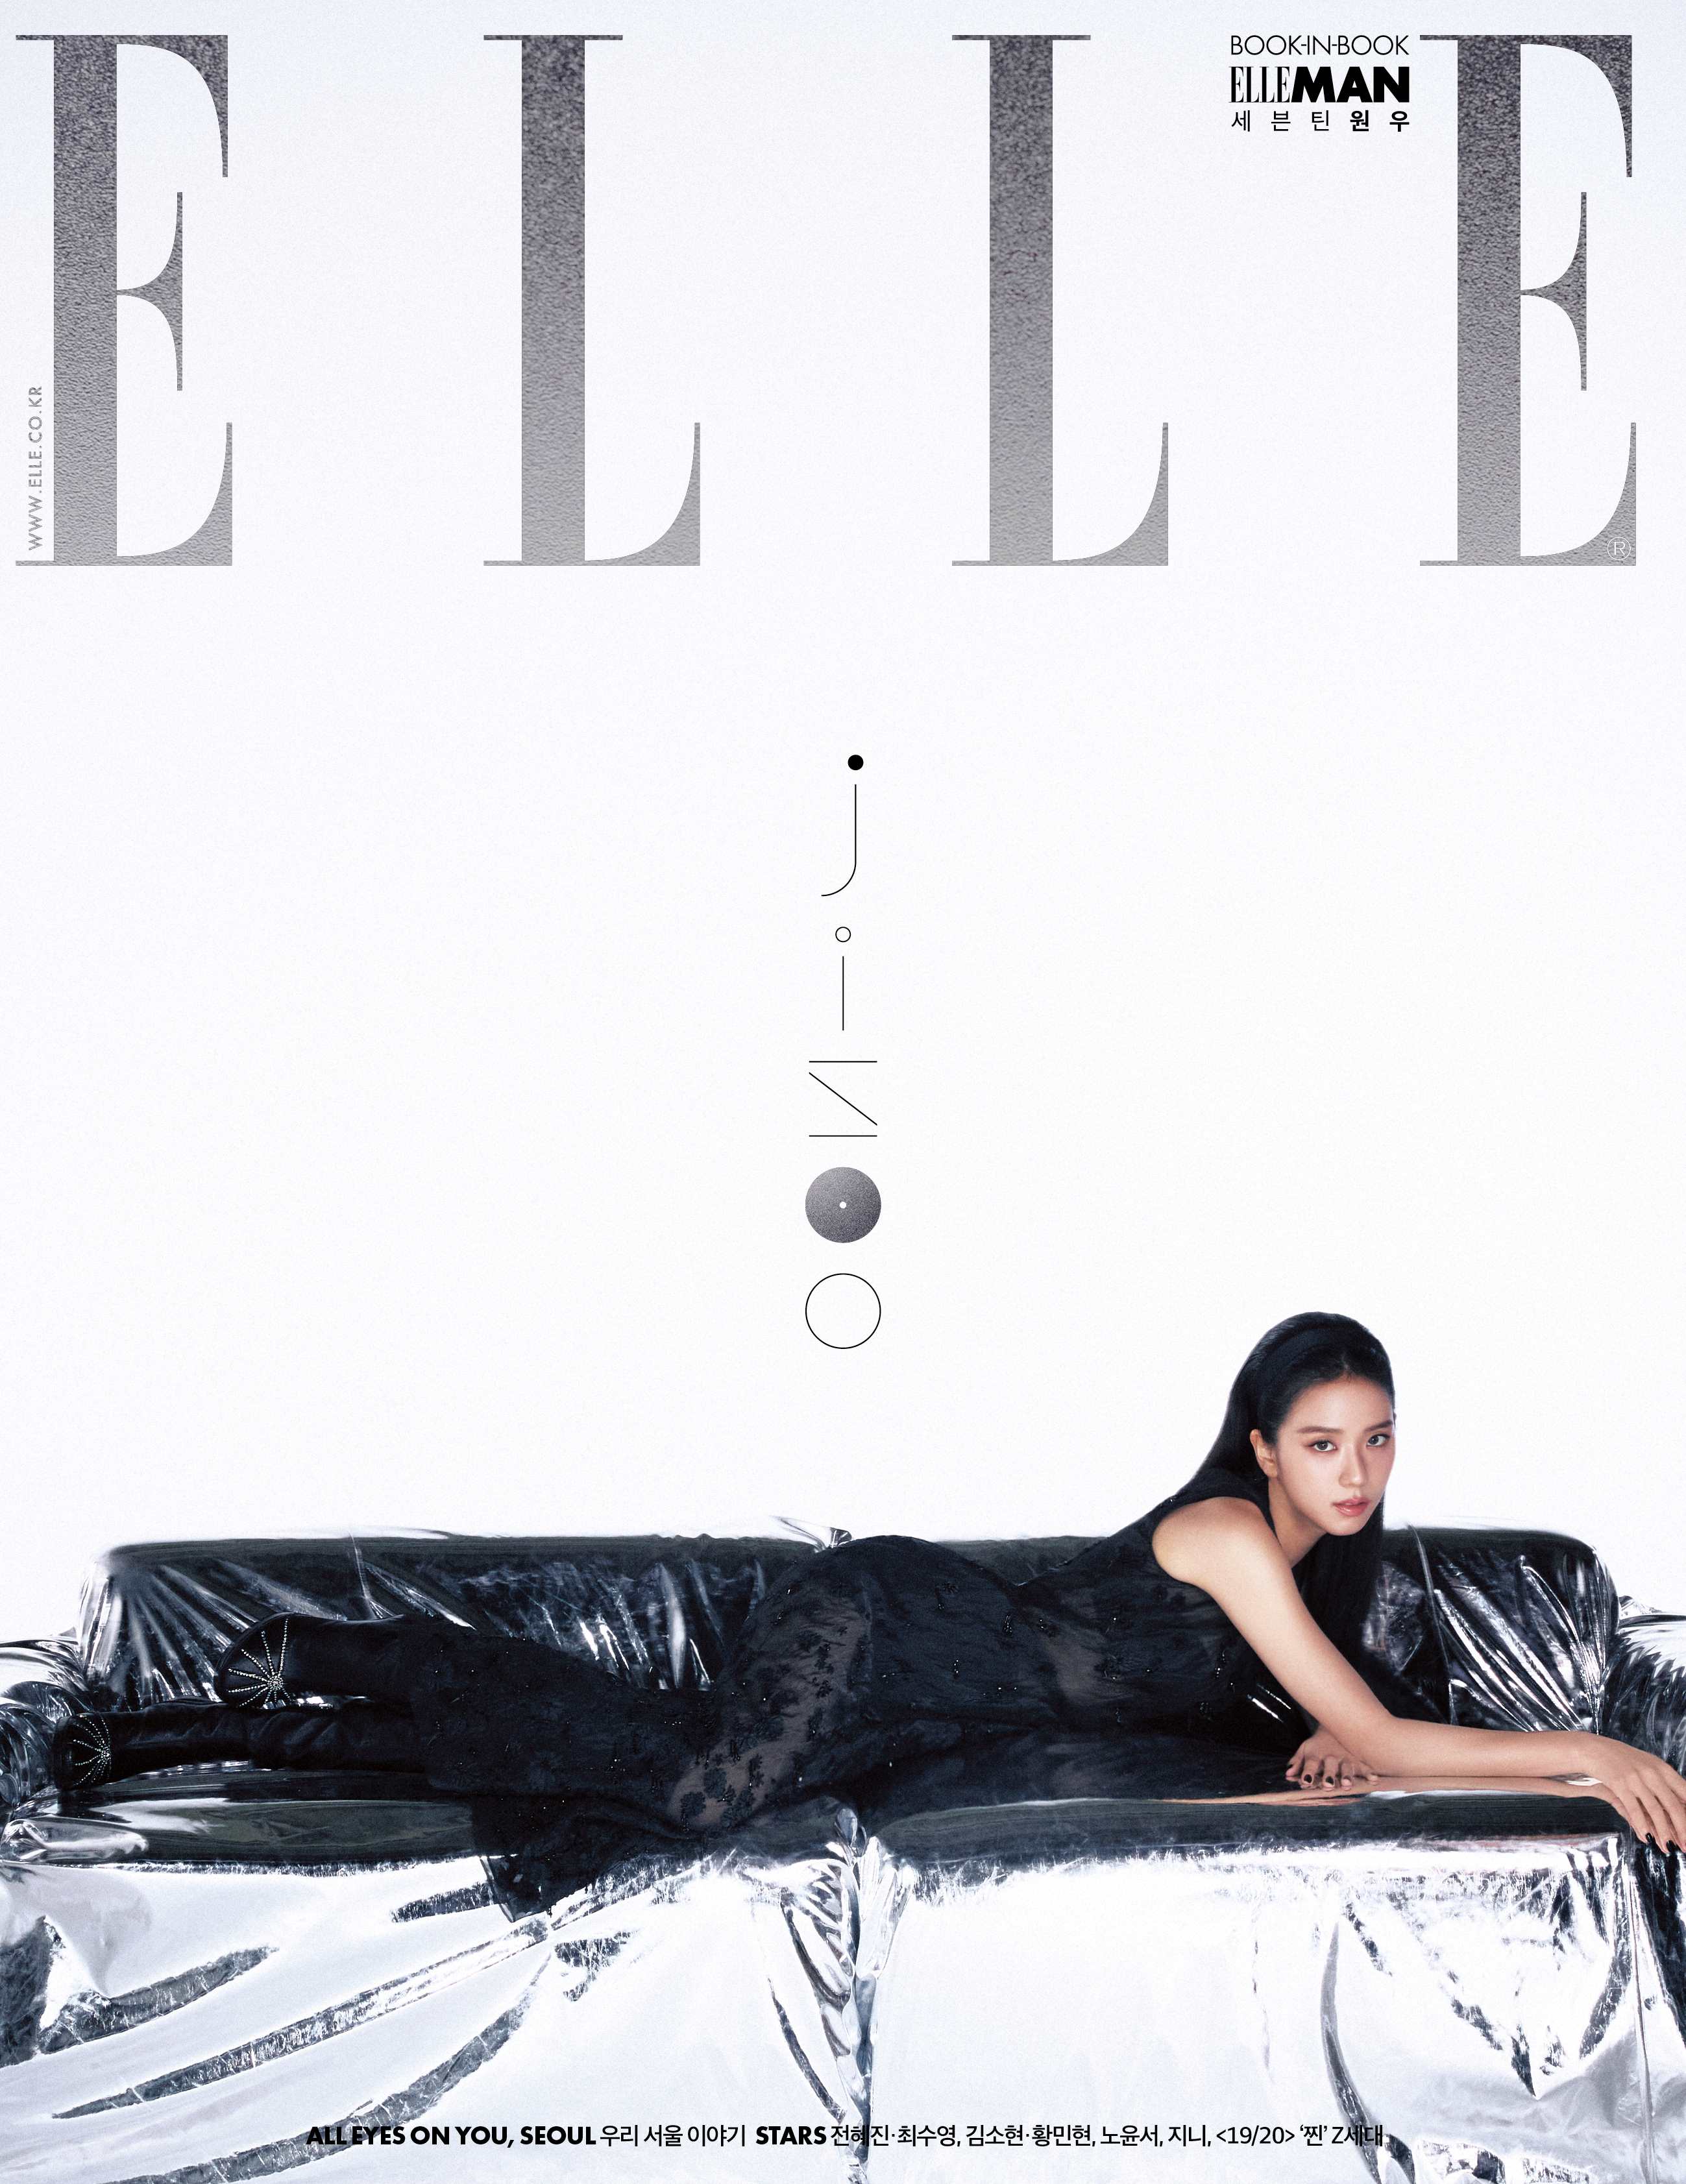 BLACKPINK's Jisoo on the cover of ELLE Korea